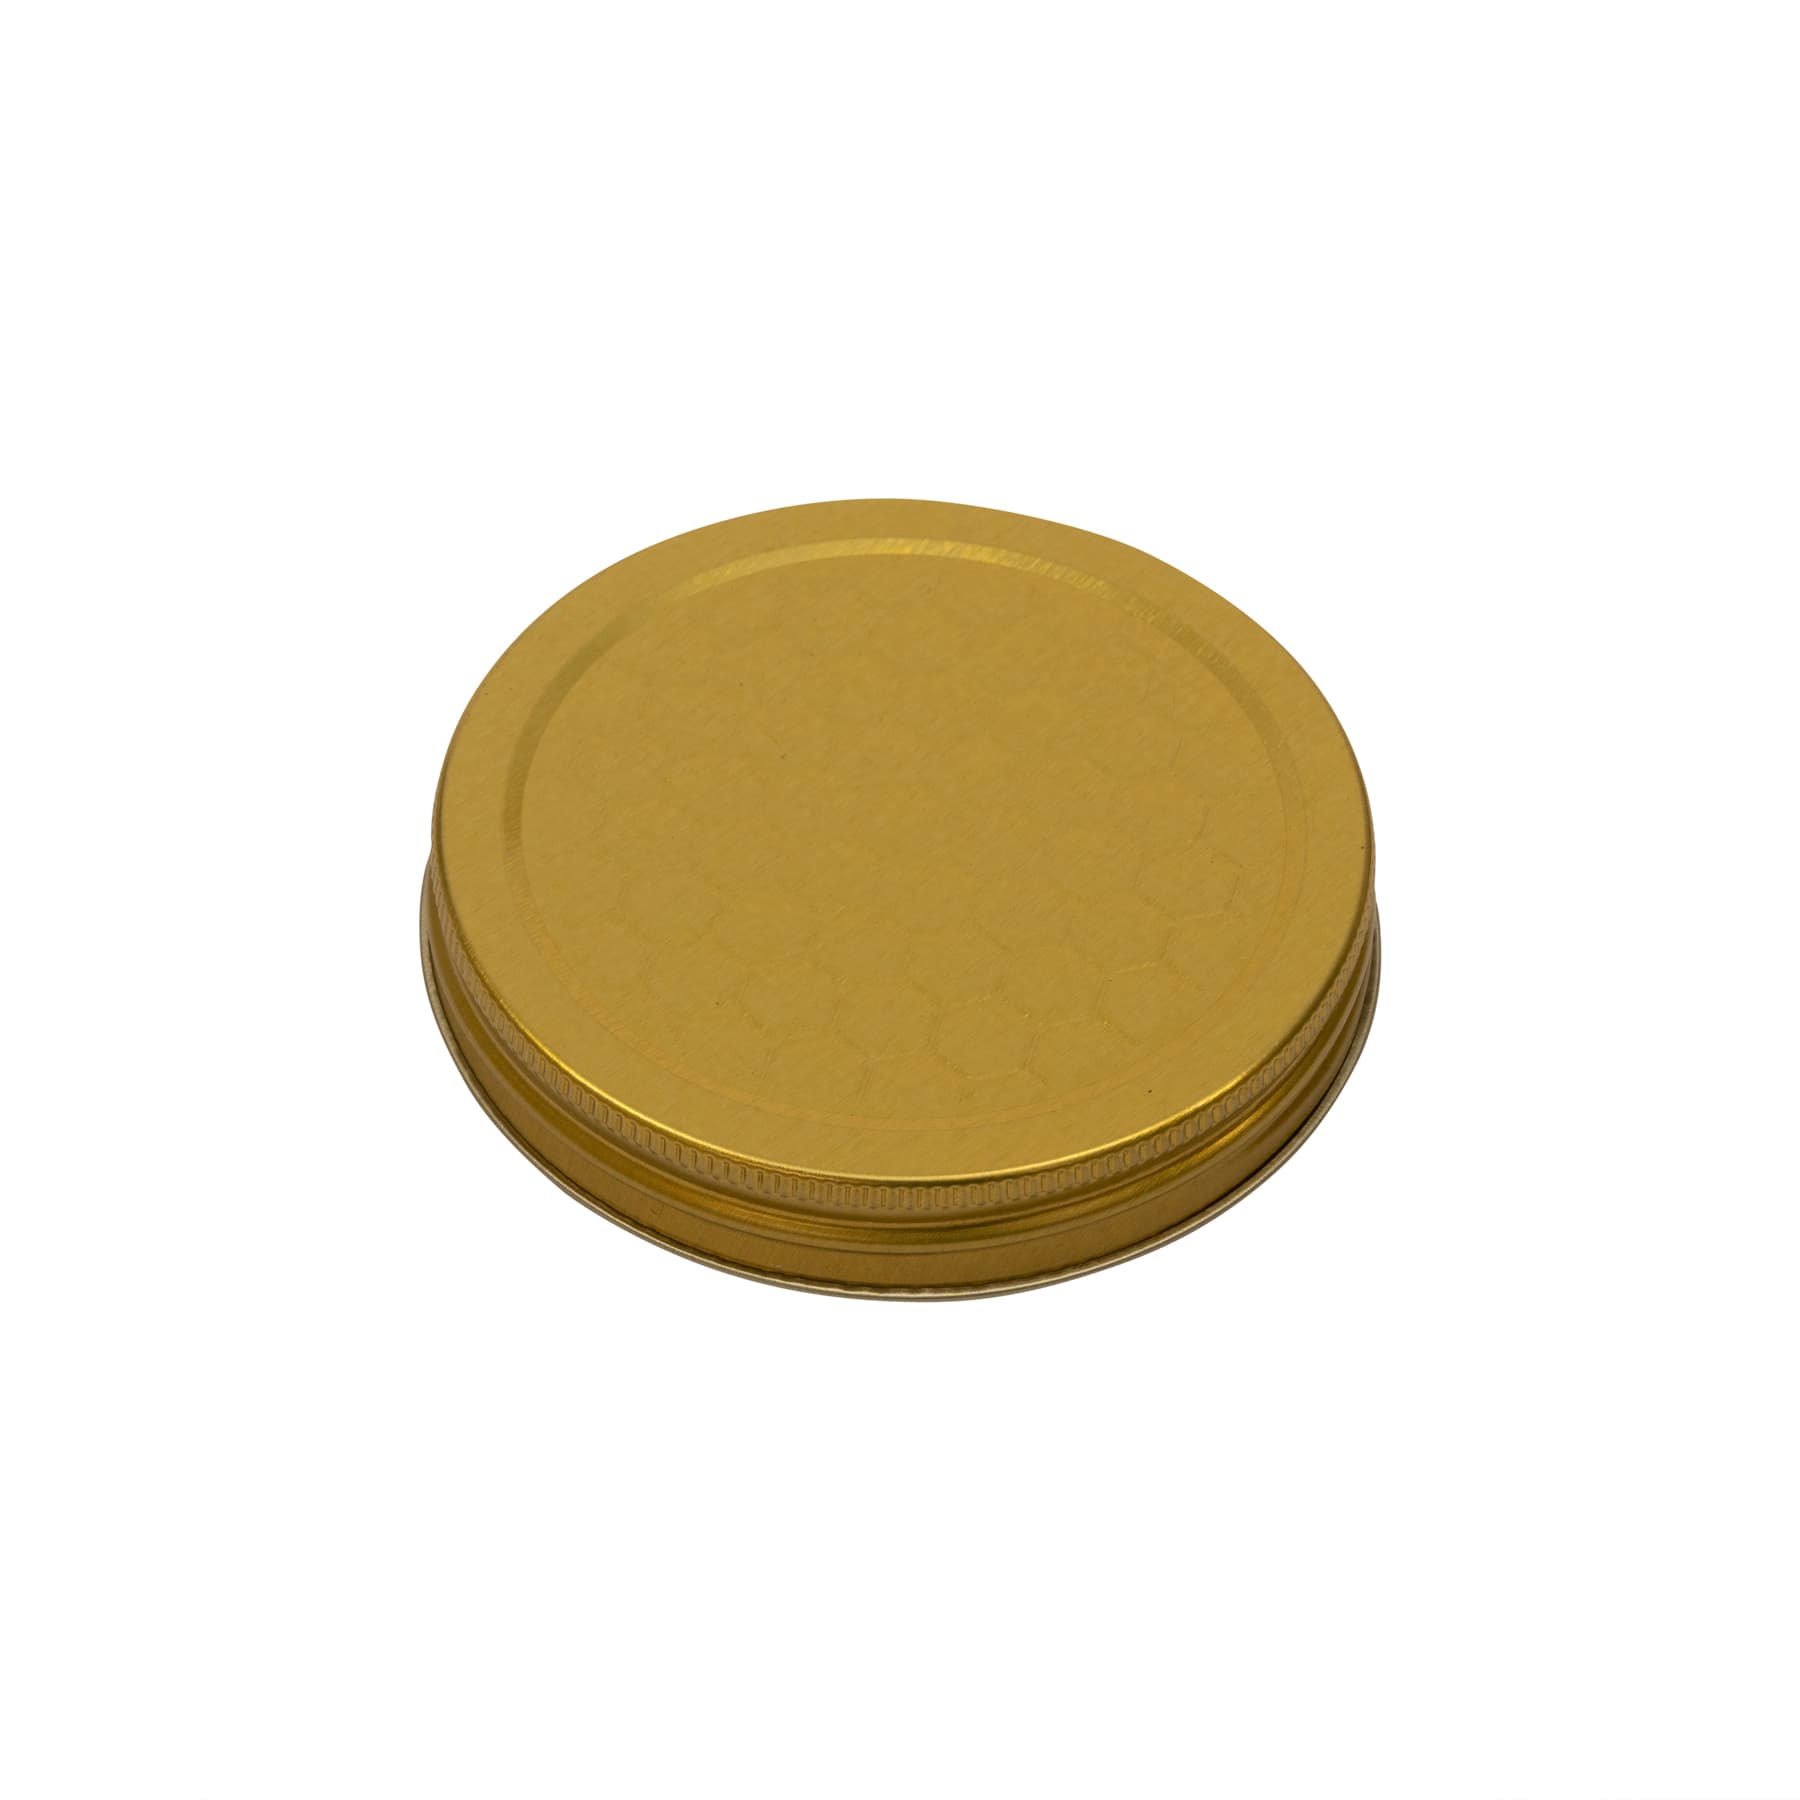 Schraubdeckel metall  für 500 g Glas (Weißblech gold lackiert) mit geprägtem Wabenmuster 80/15 mm